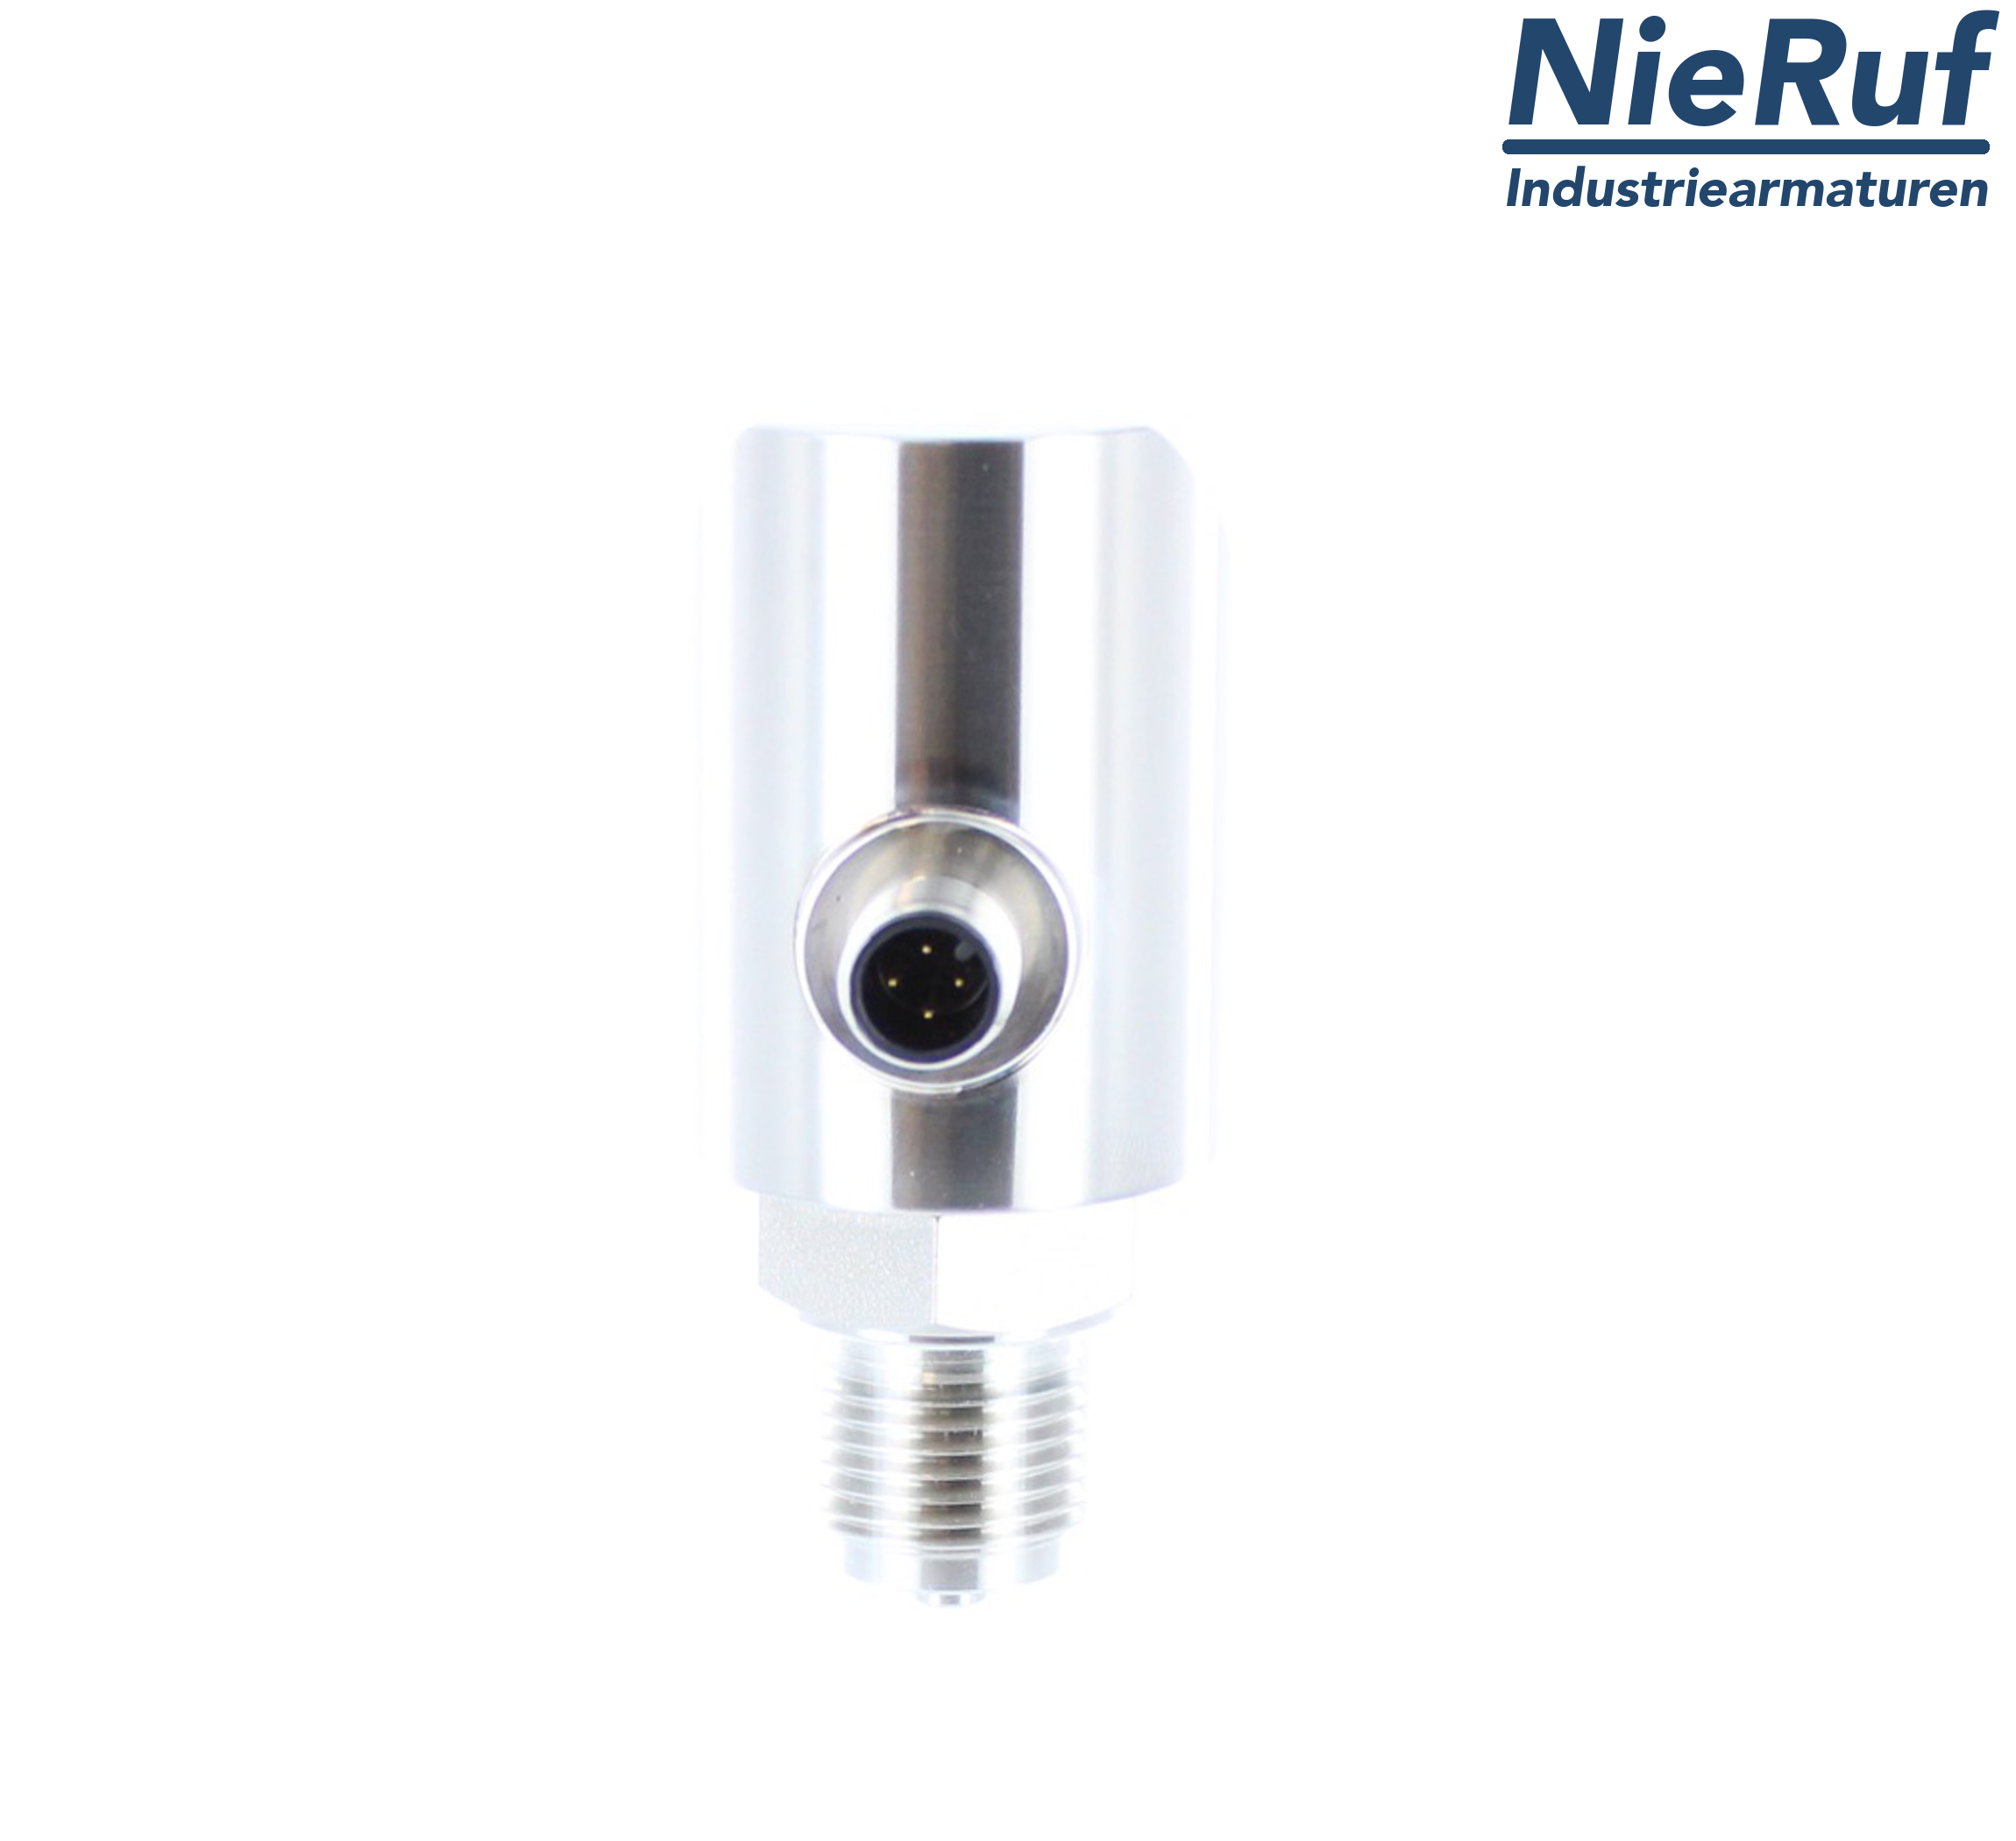 digital pressure sensor G 1/2" B 5-wire: 2xPNP, 1x4 - 20mA FPM 0,0 - 40,0 bar